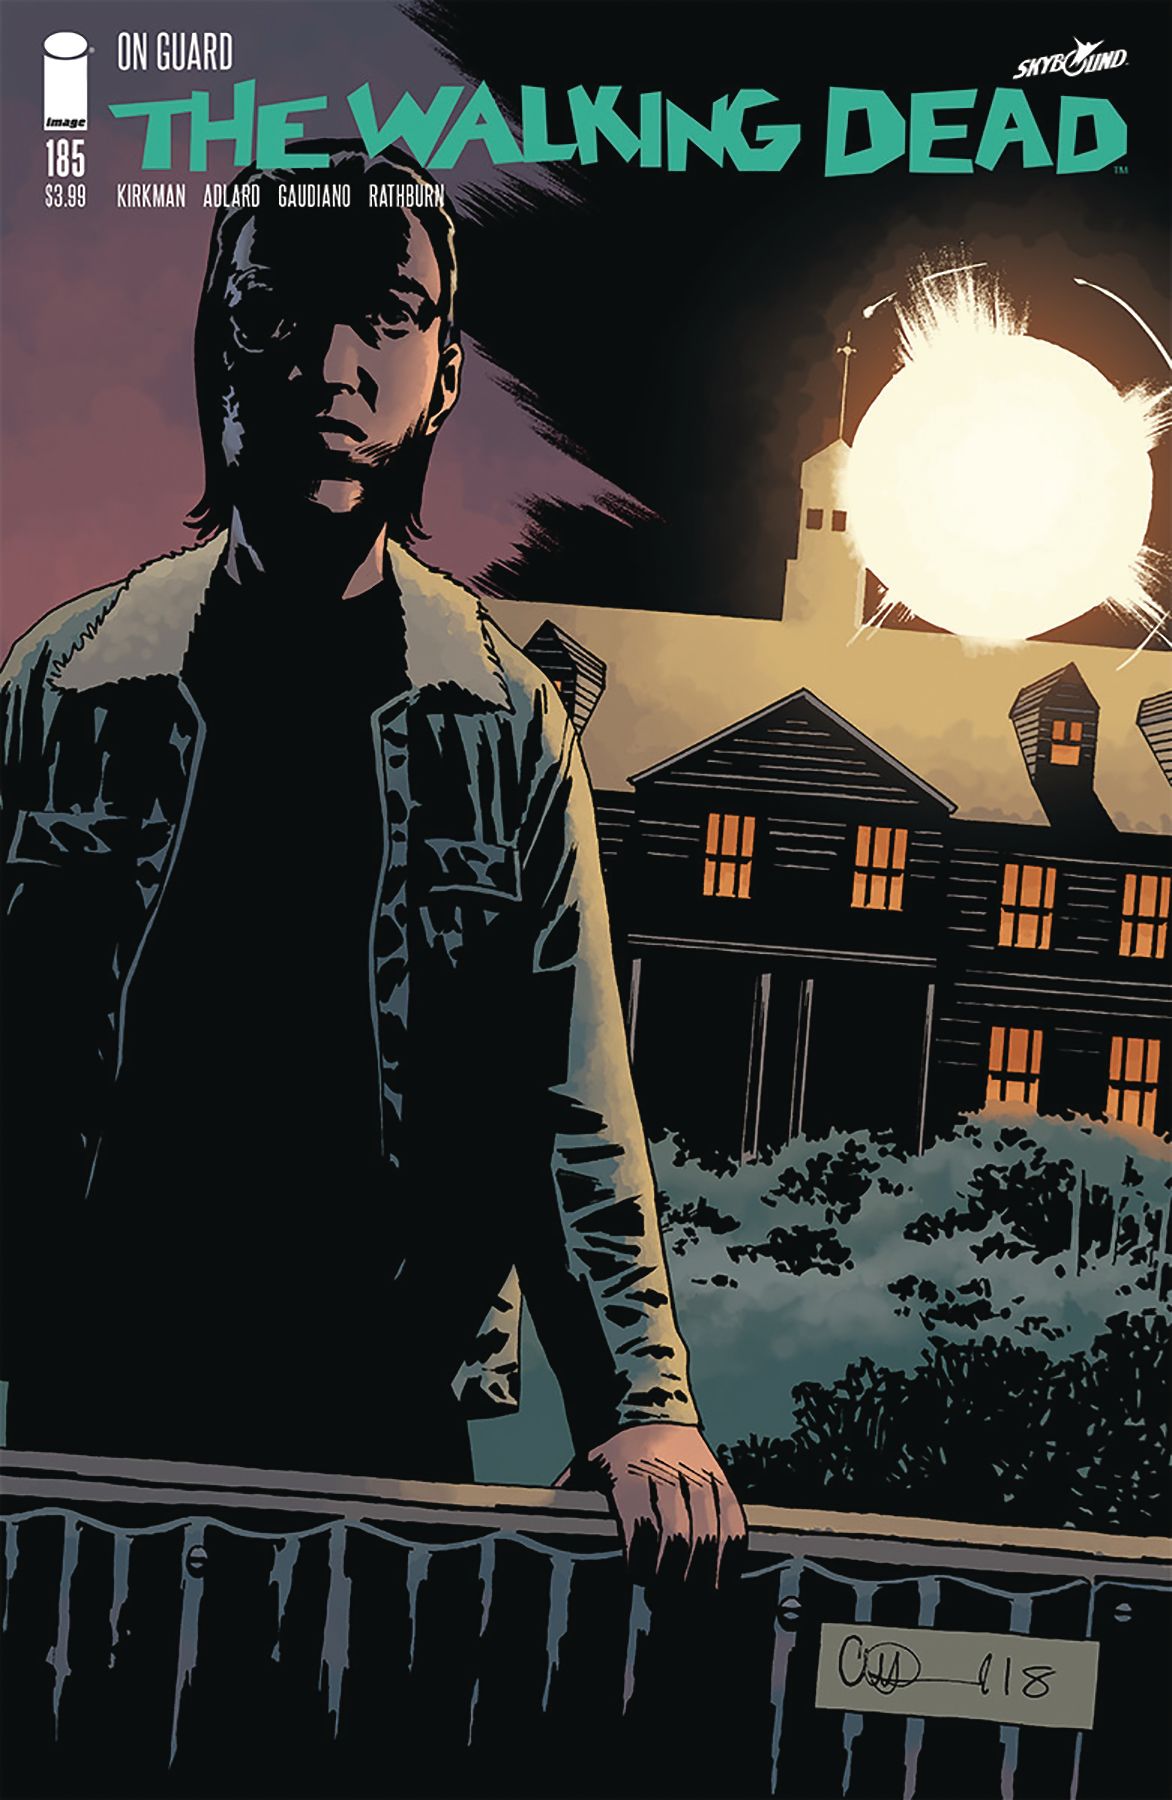 The Walking Dead #185 Comic